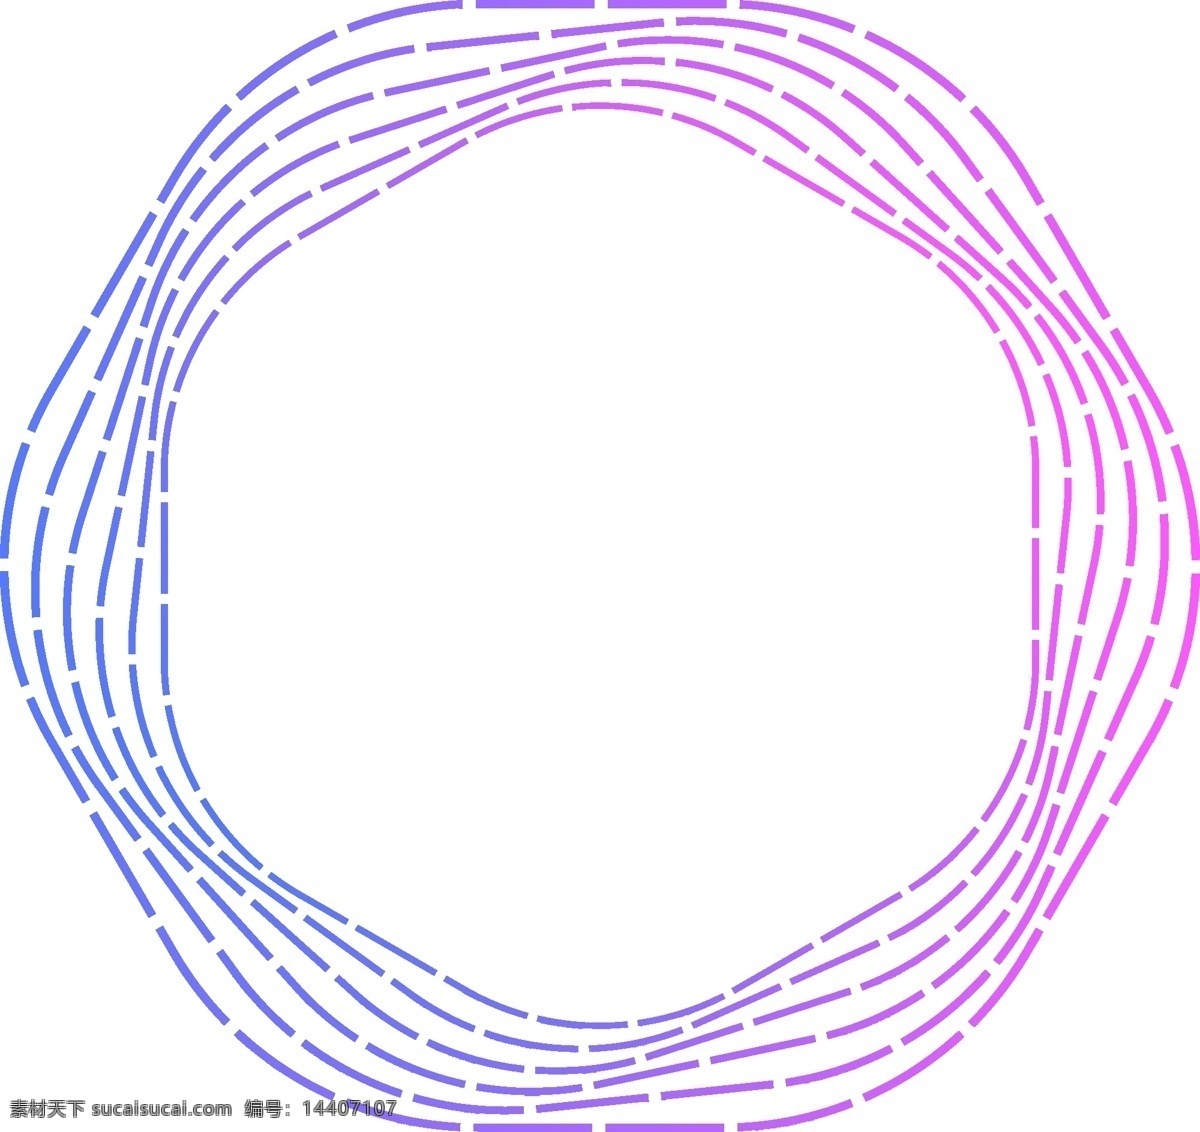 几何图形 欣赏 几何 图形 渐变 紫色 蓝色 线条 扭曲 圆弧 源文件 艺术